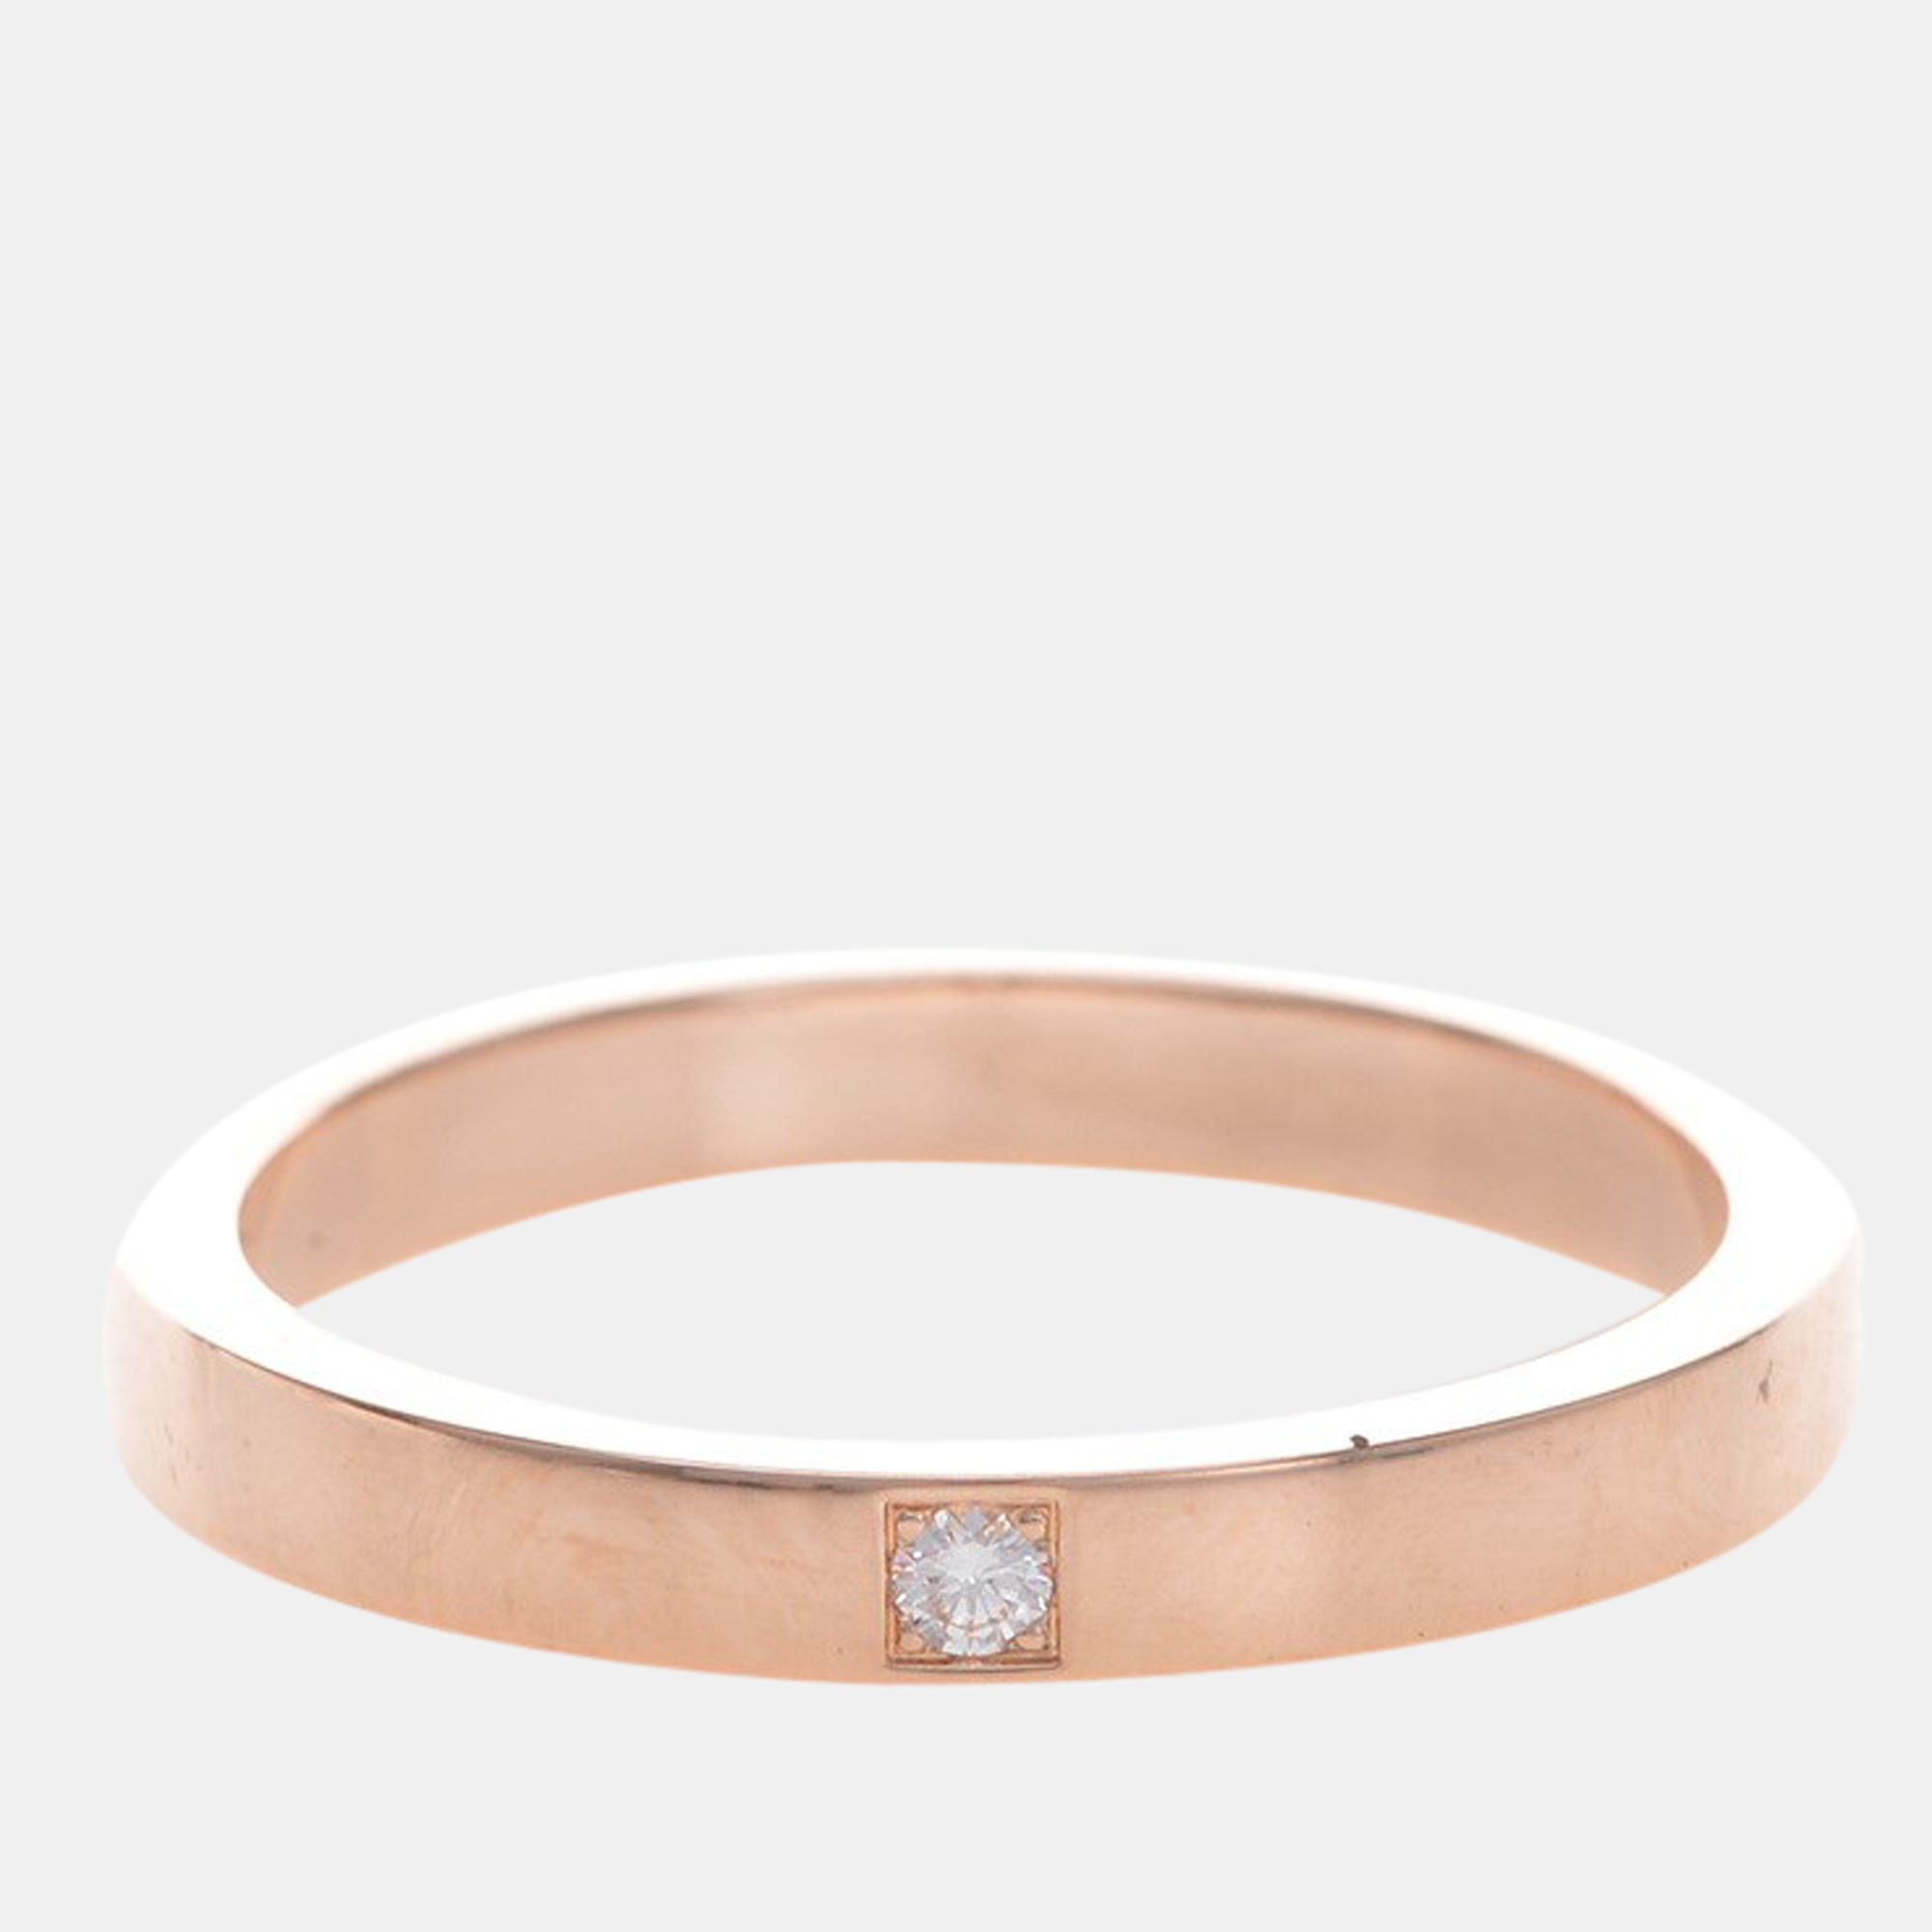 Bvlgari MarryMe 18K Rose Gold Diamond Ring EU 61